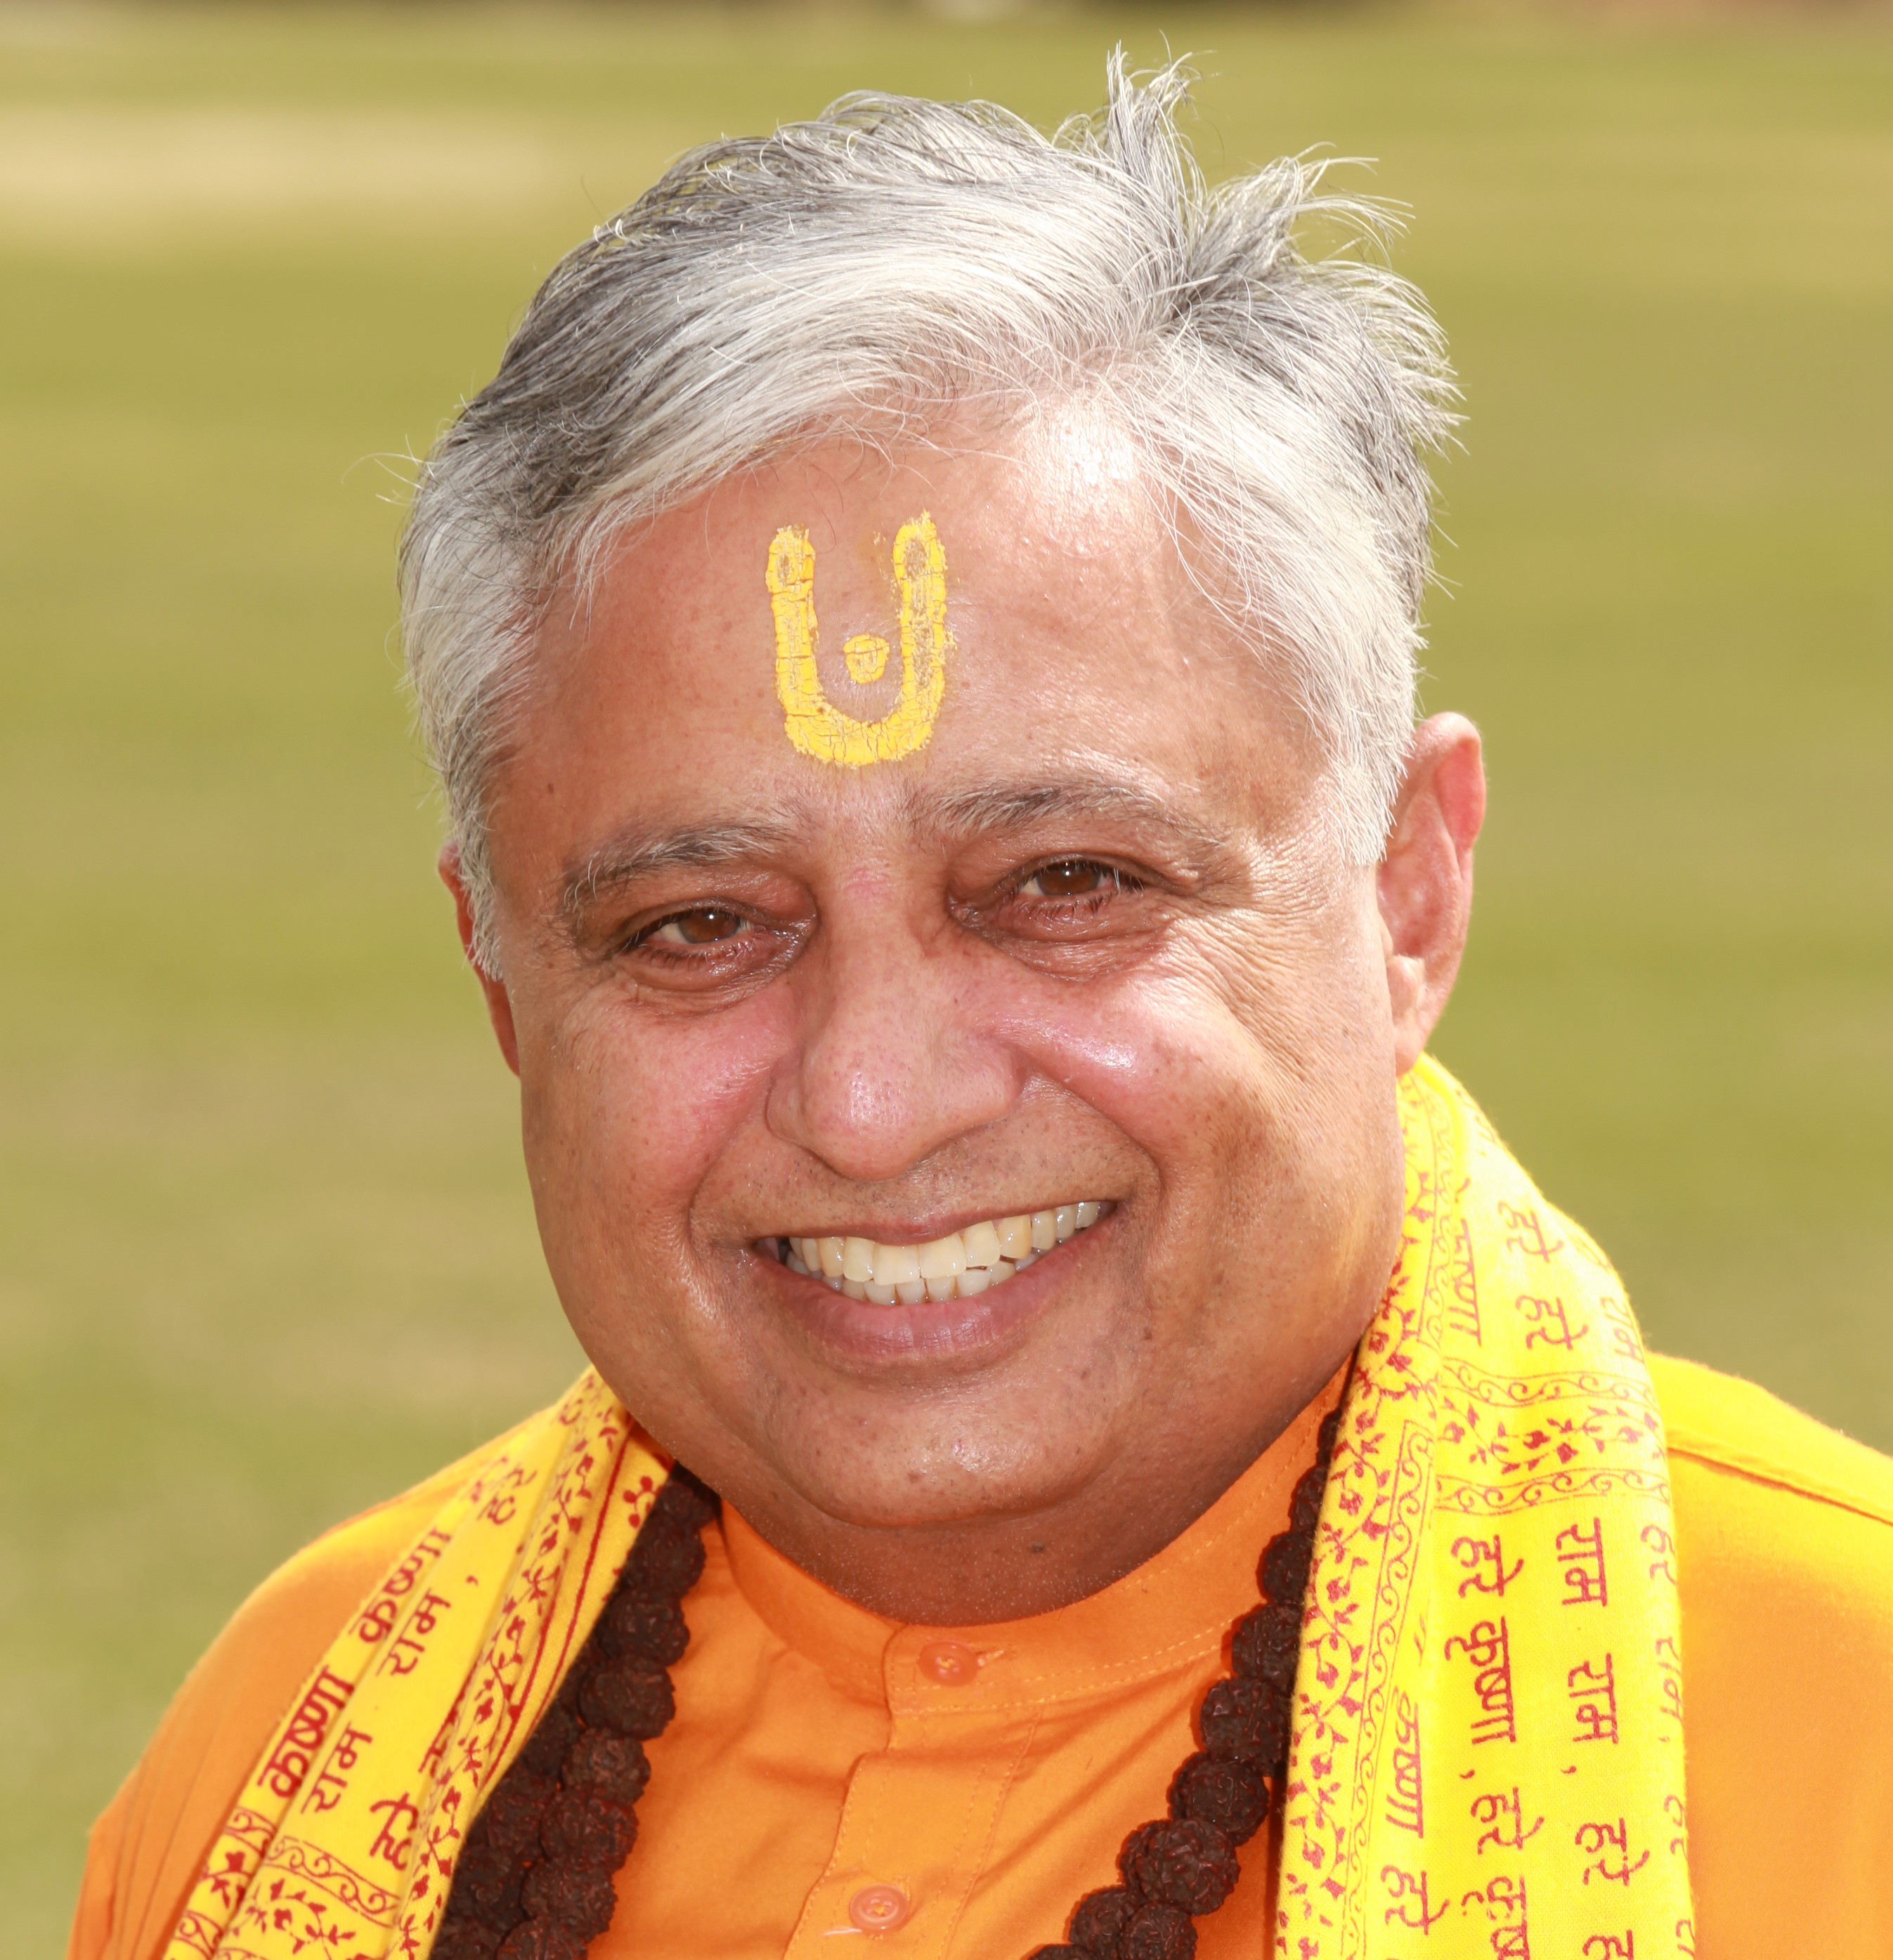 Hindu statesman Rajan Zed who has opened 109 legislative bodies in Utah with ancient Sanskrit mantras